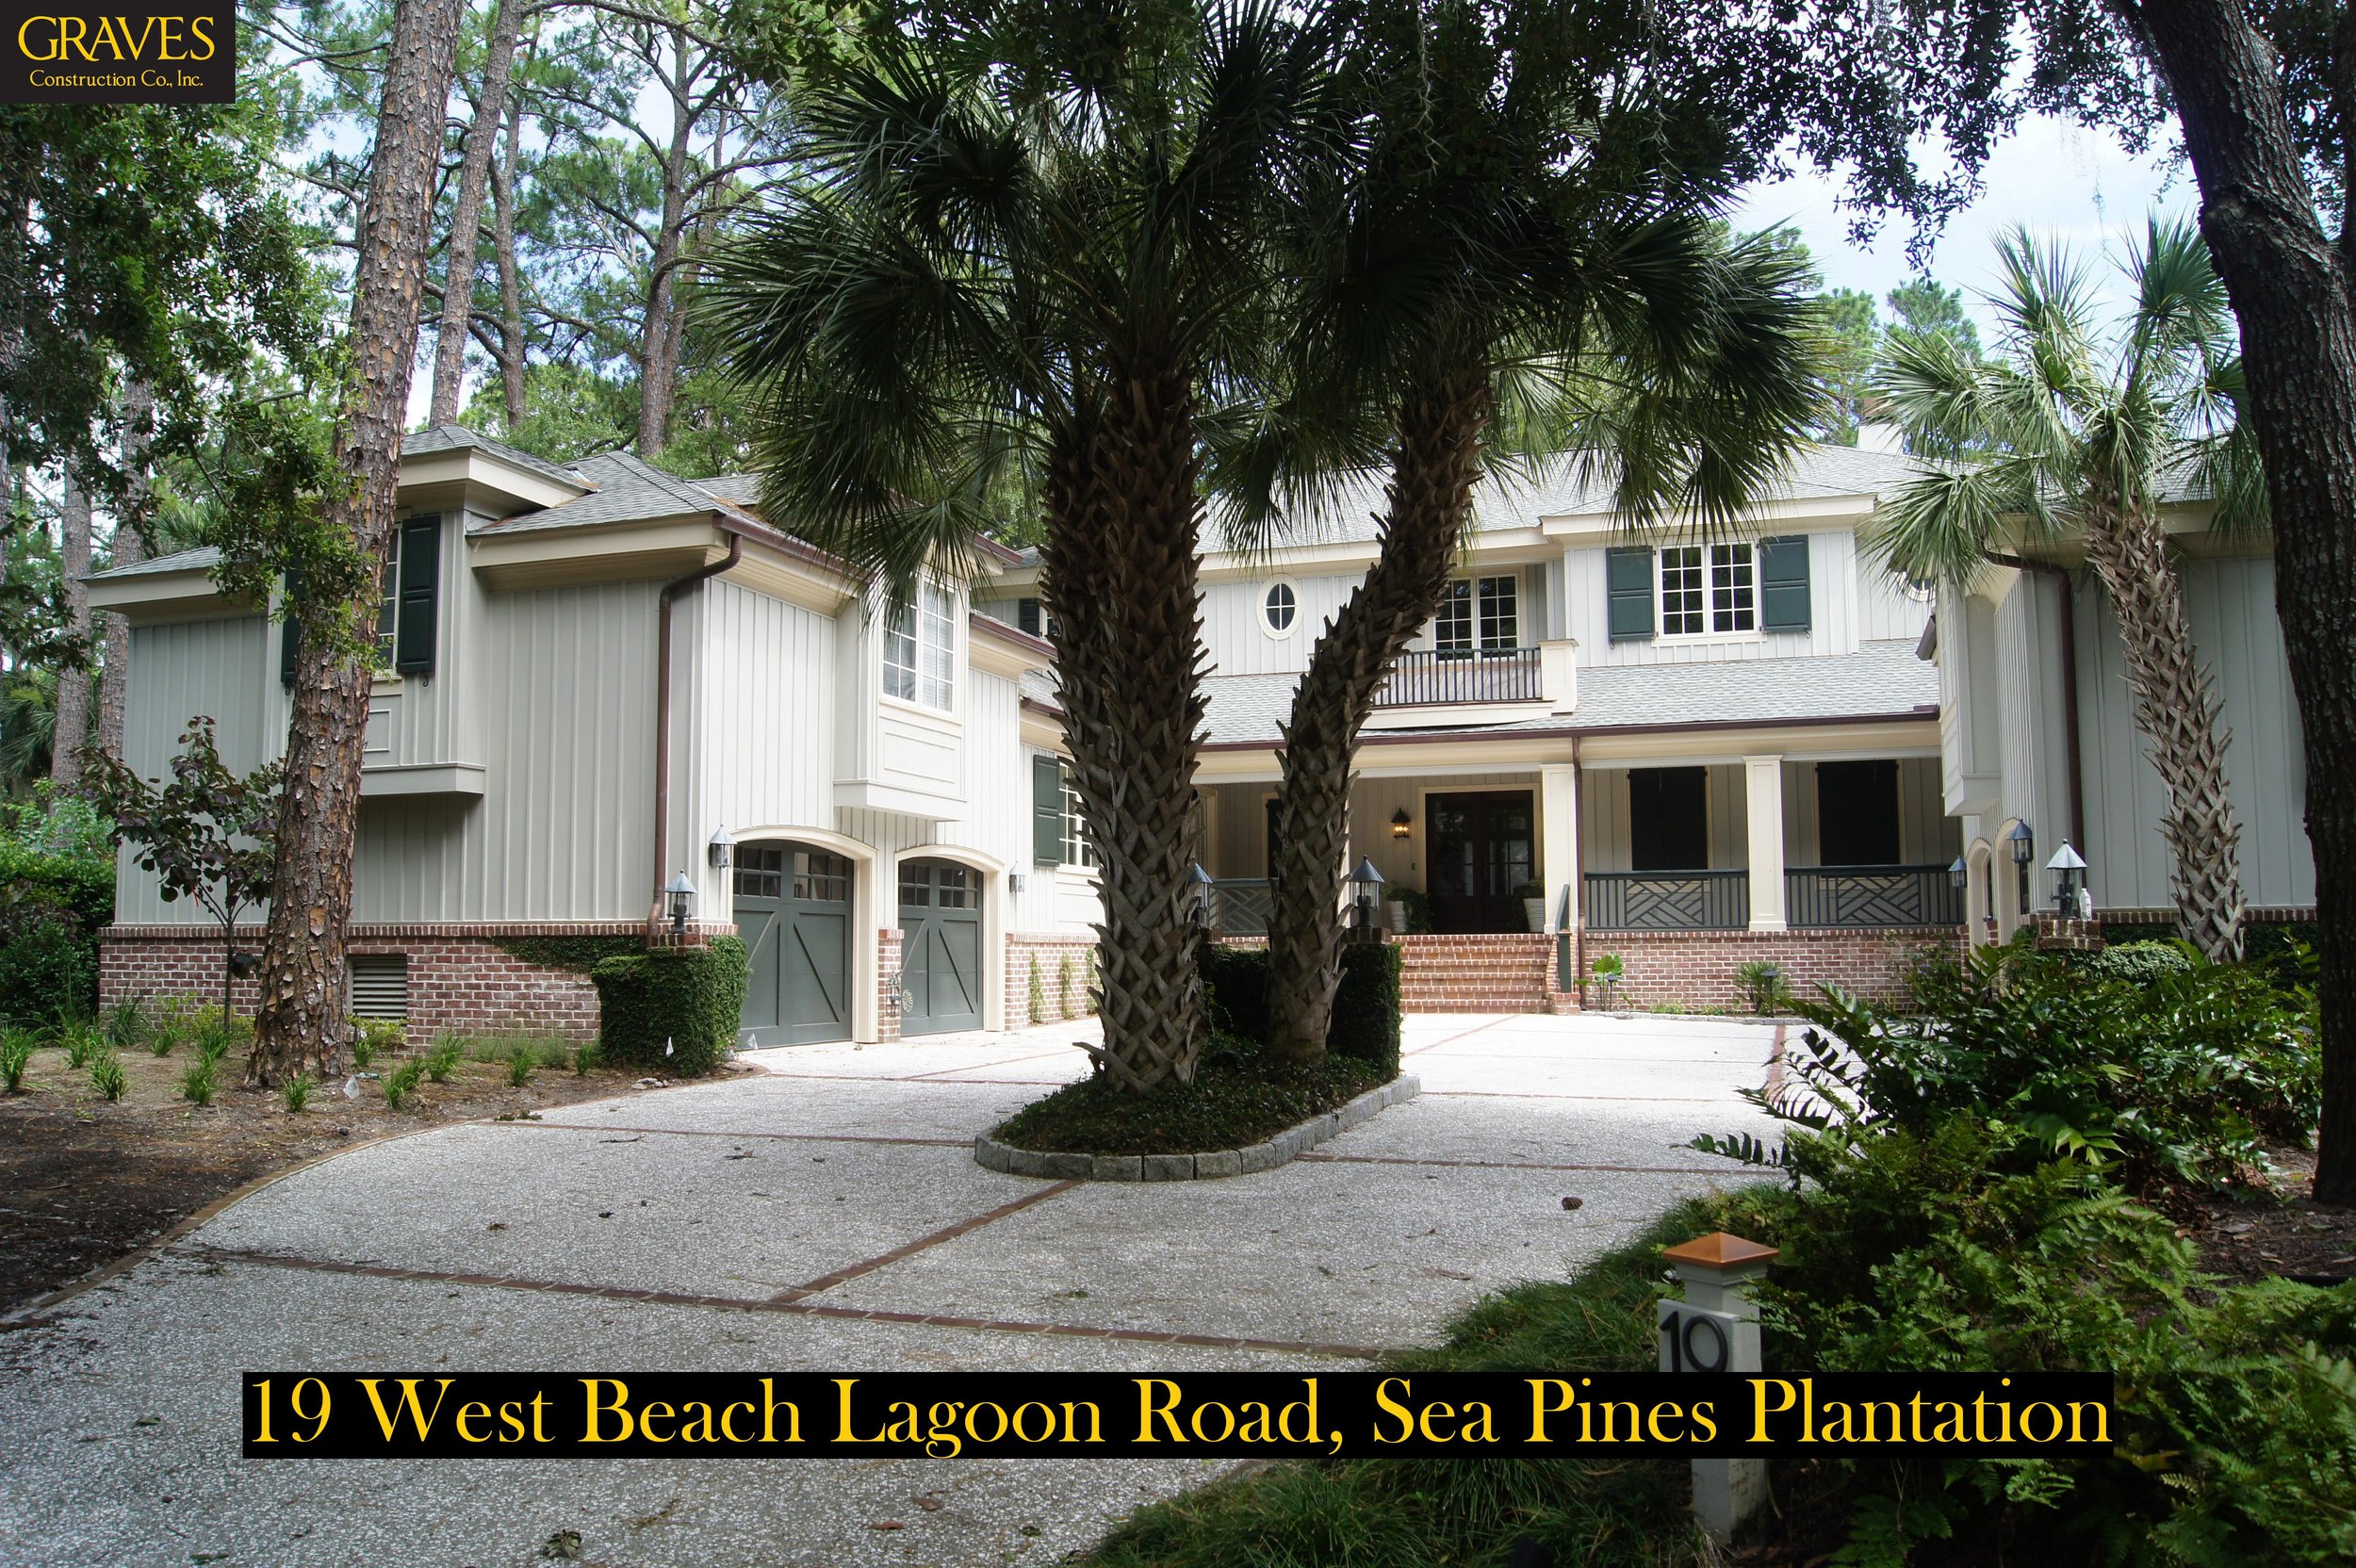 19 West Beach Lagoon Rd - 2